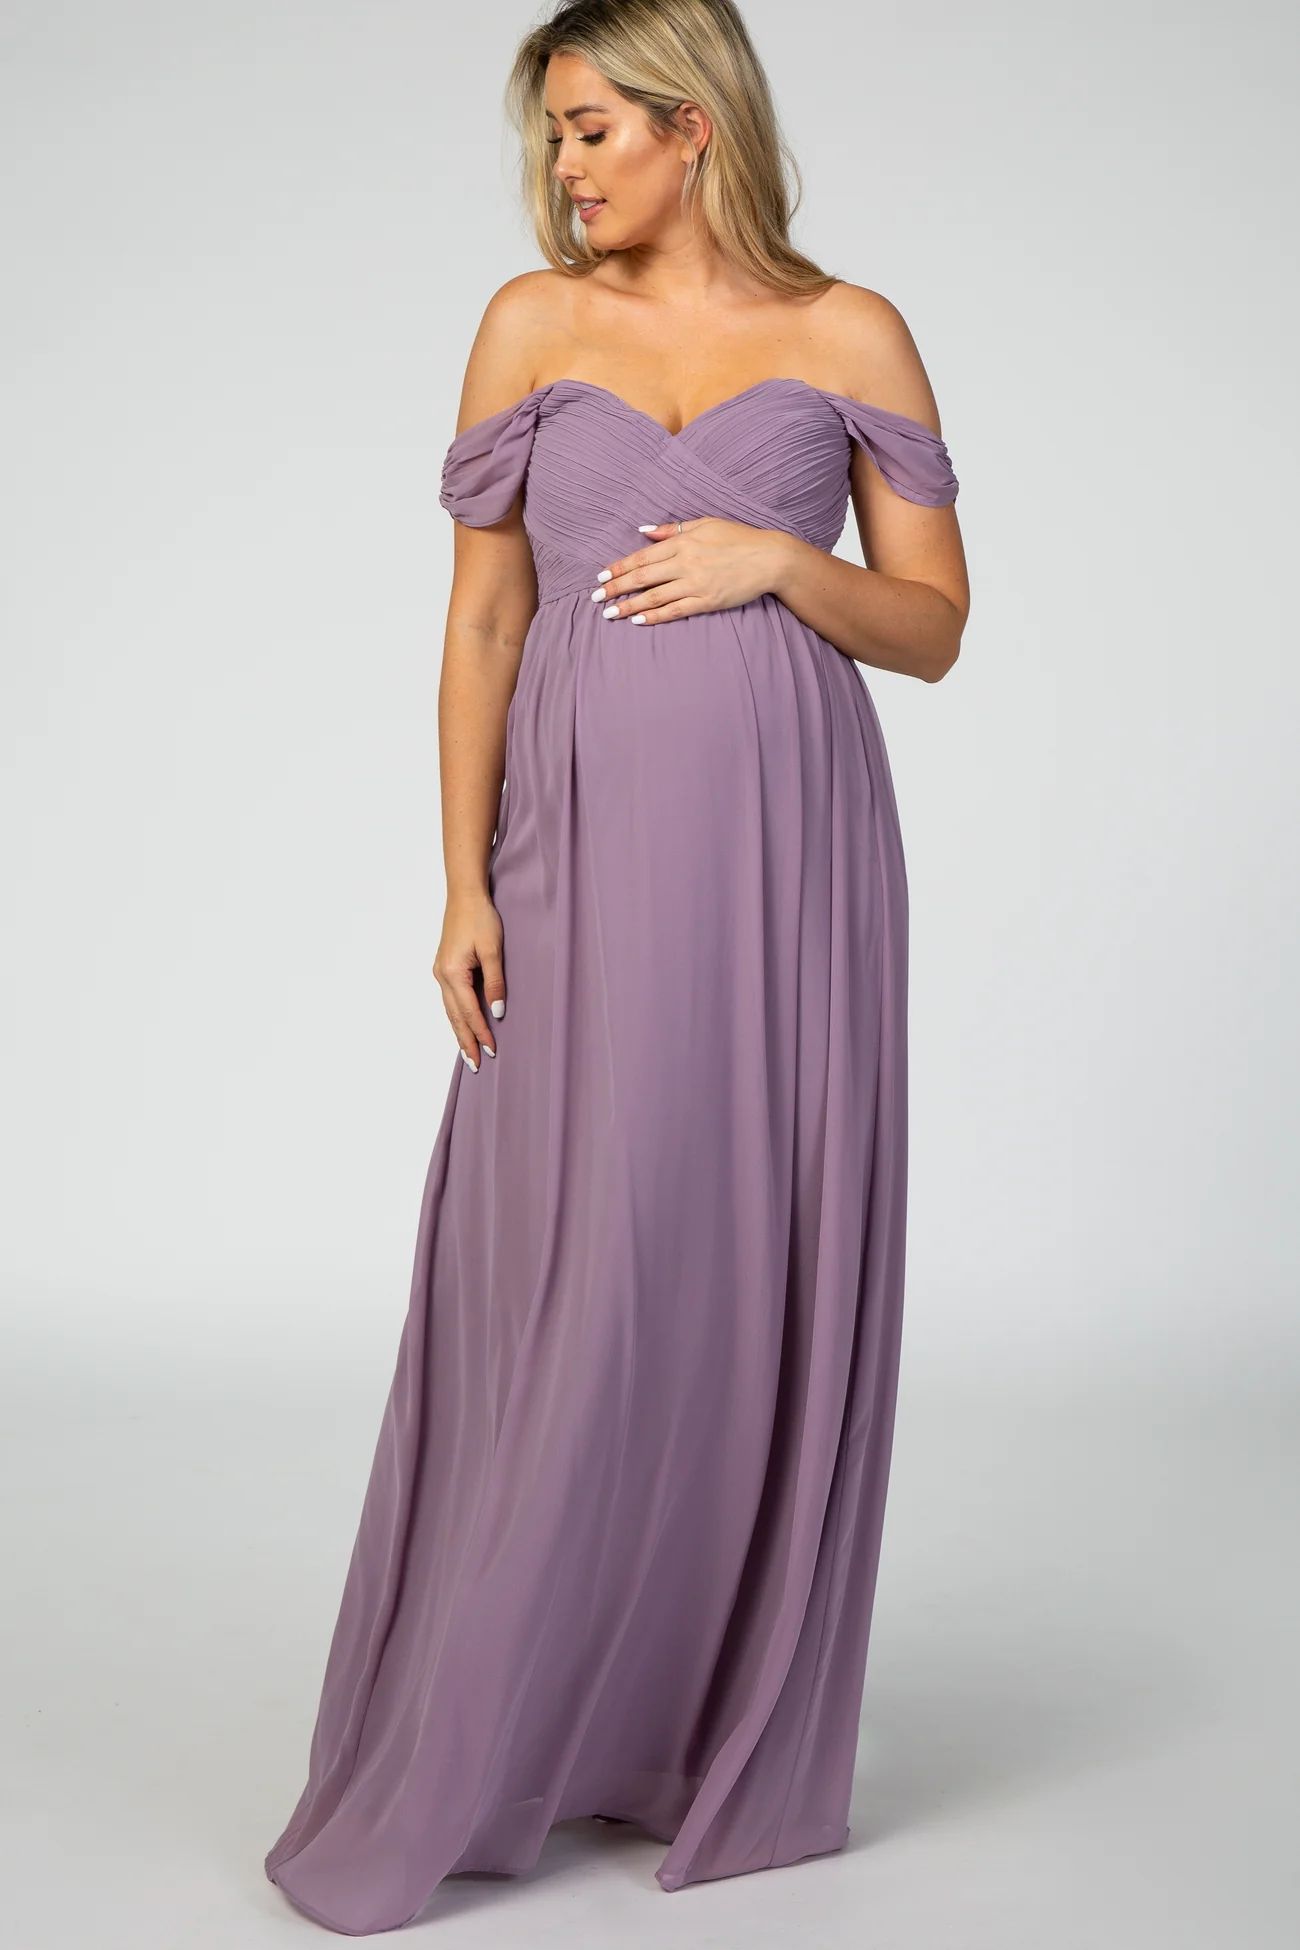 PinkBlush Lavender Off Shoulder Chiffon Maxi Maternity Dress | PinkBlush Maternity